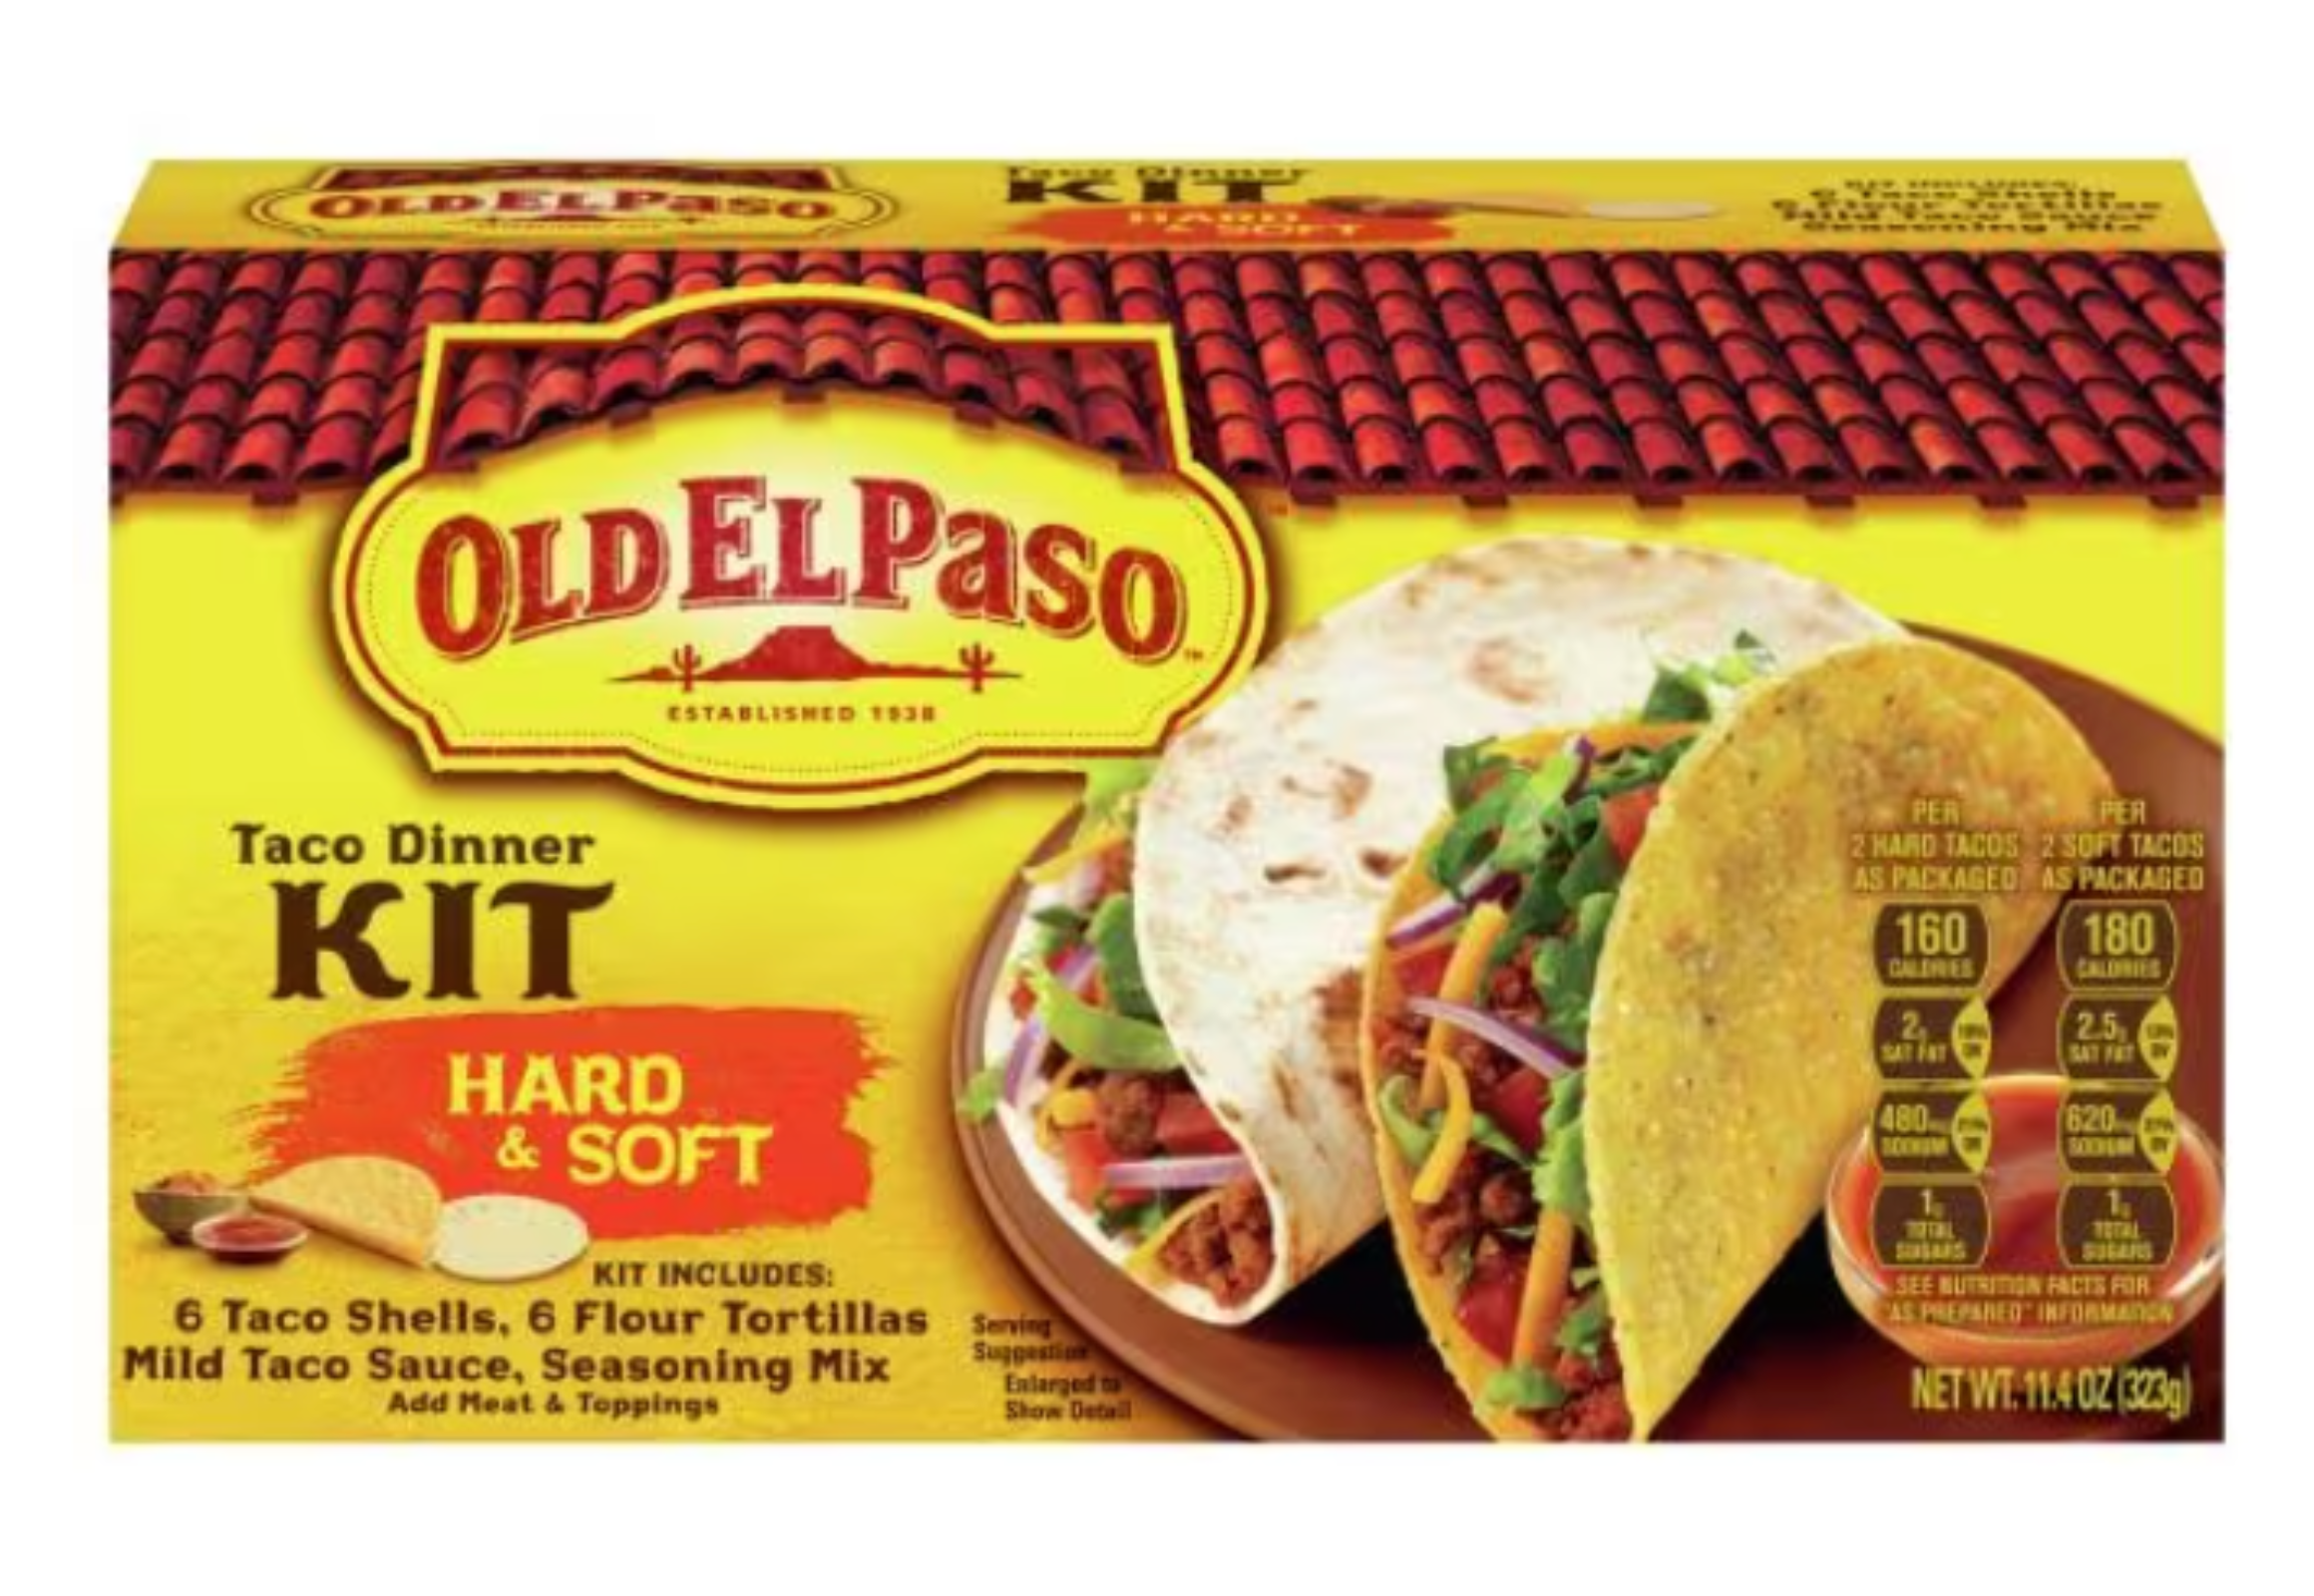 2 Old El Paso Taco Dinner Kits